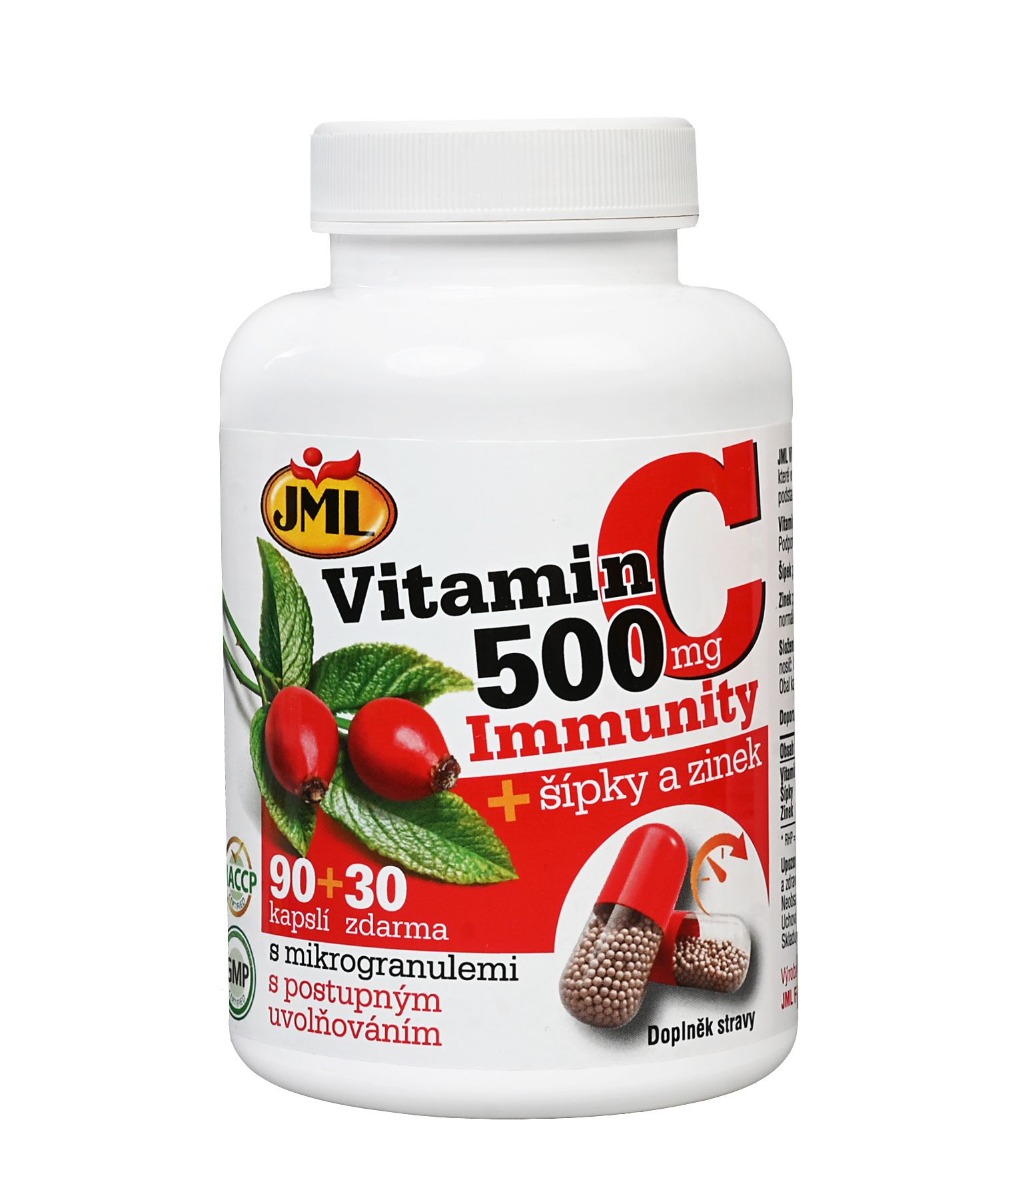 JML Vitamin C 500 mg + šípky a zinek 90+30 kapslí JML